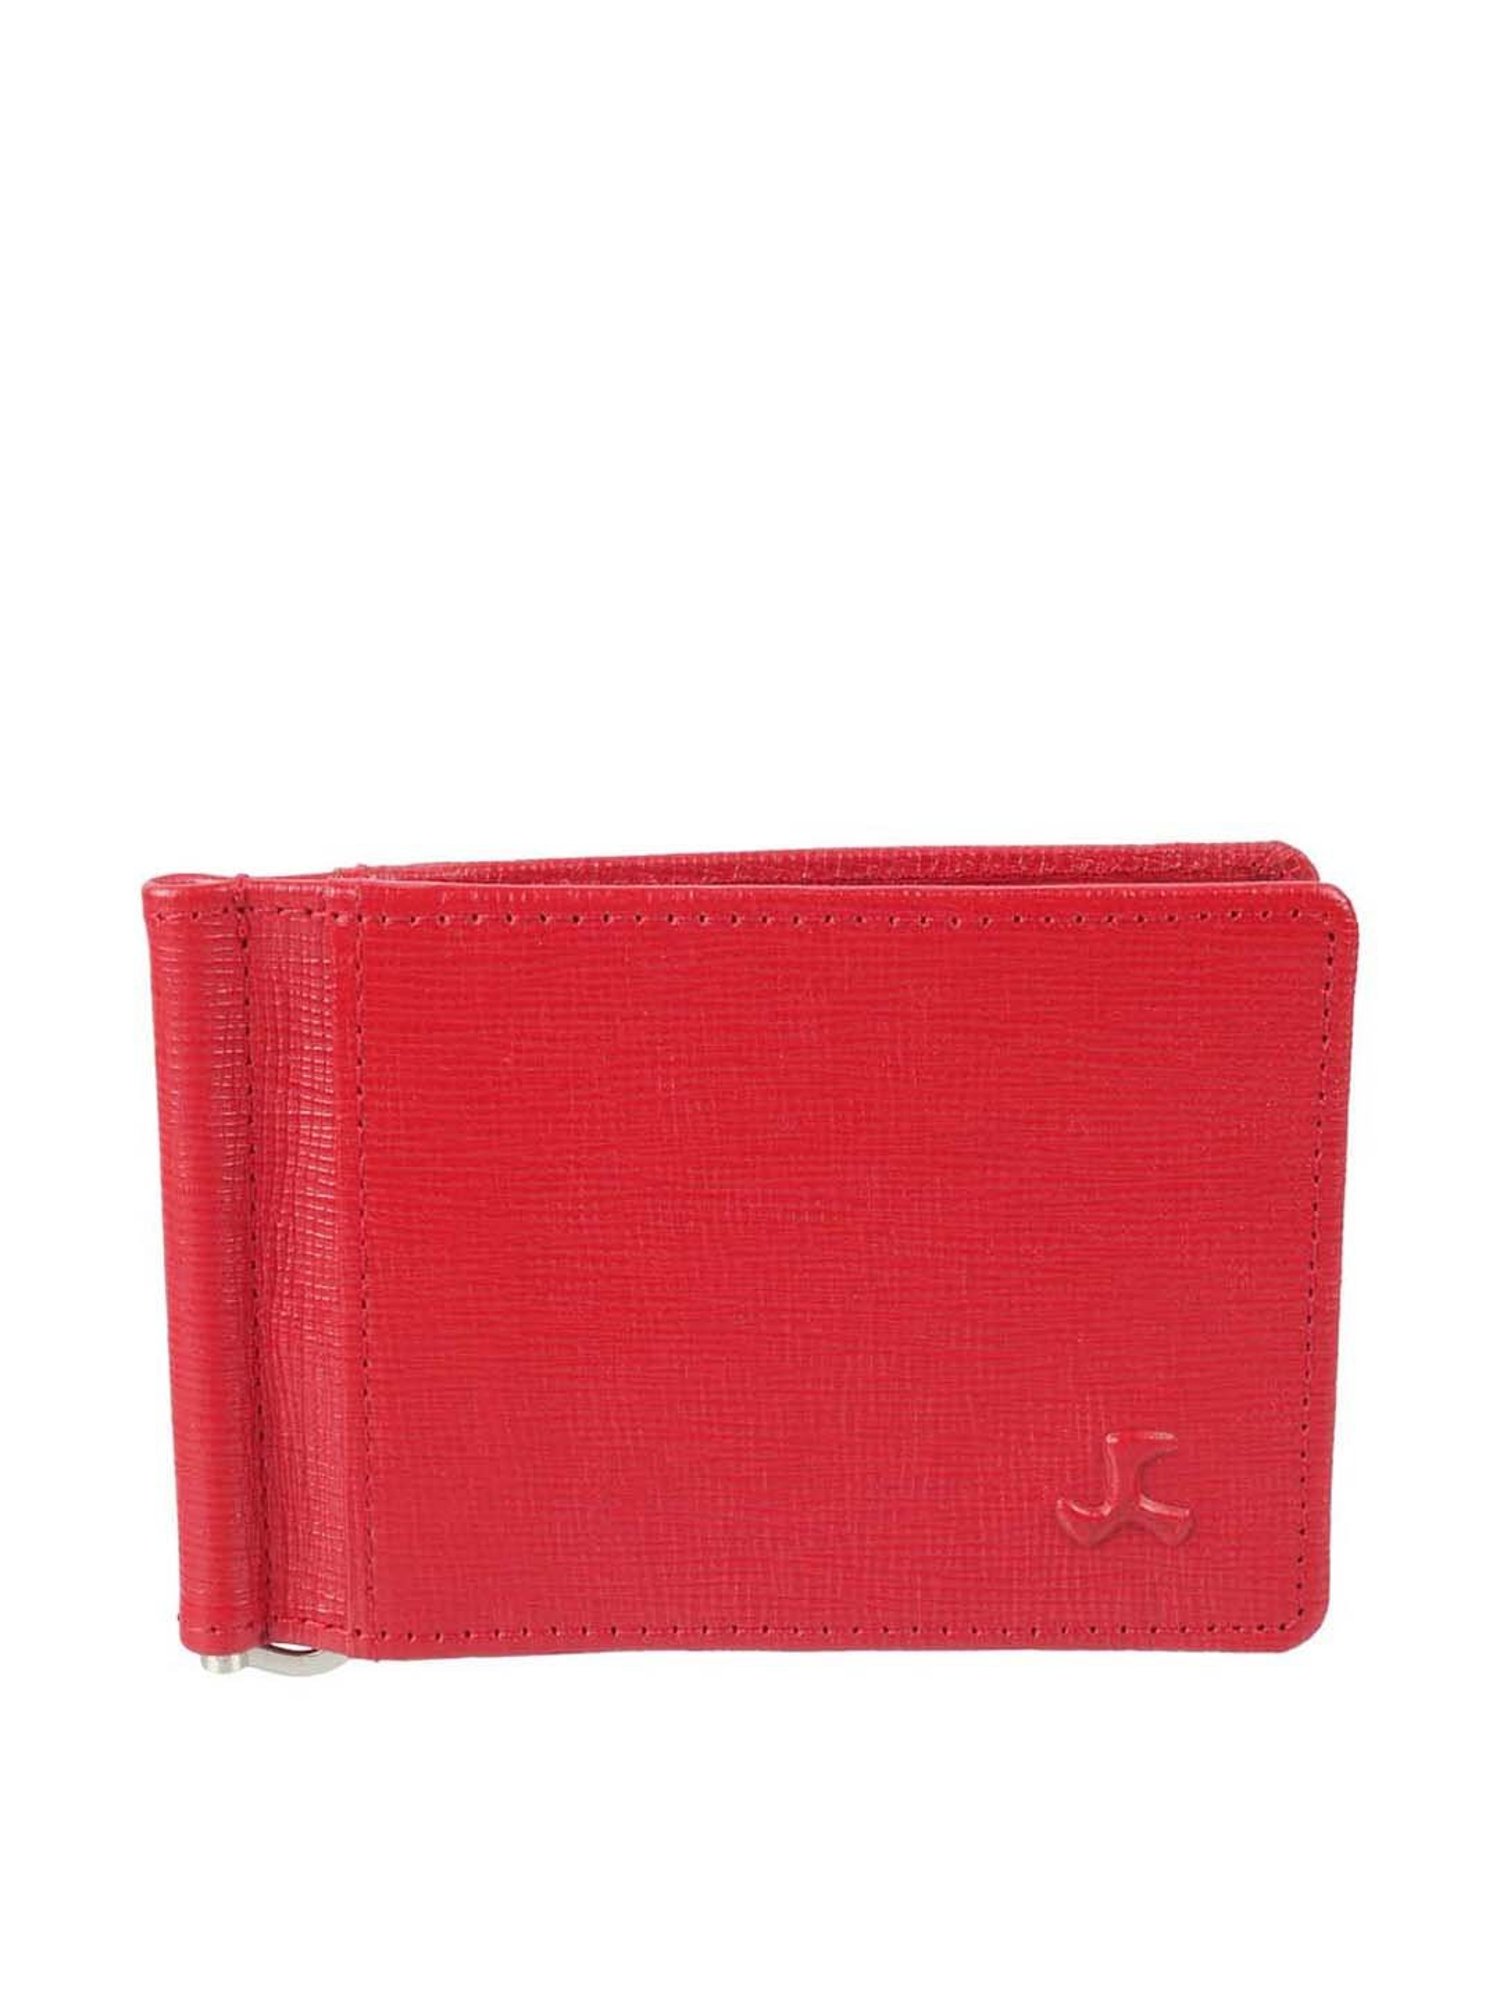 Men Cardholder Billfold Genuine Leather Dark Red Wallet Bifold Purse  Moneyfold | eBay